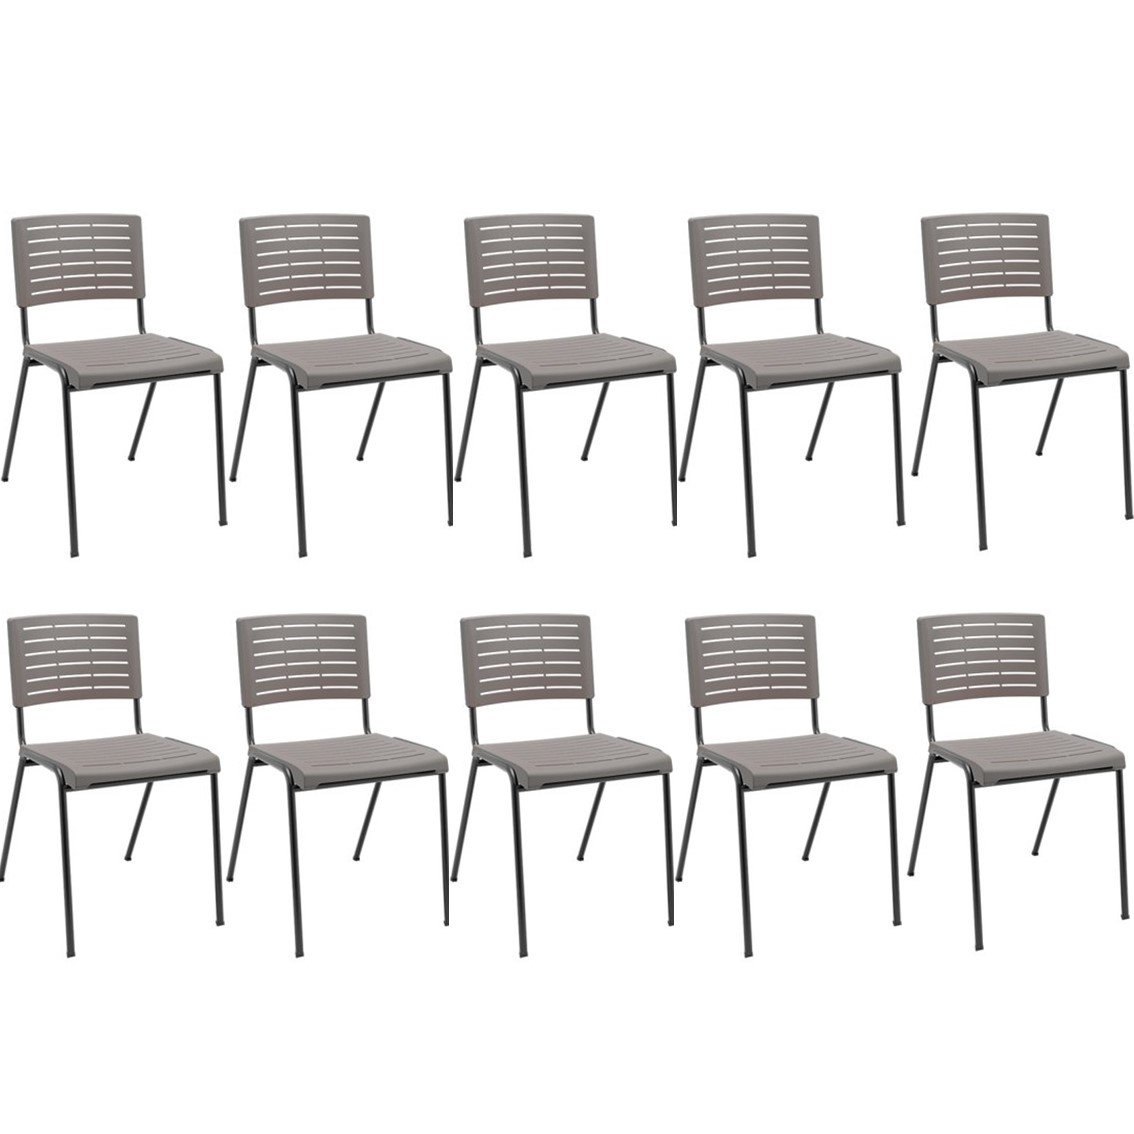 Kit 10 Cadeiras de Escritório Niala NR17  - 1